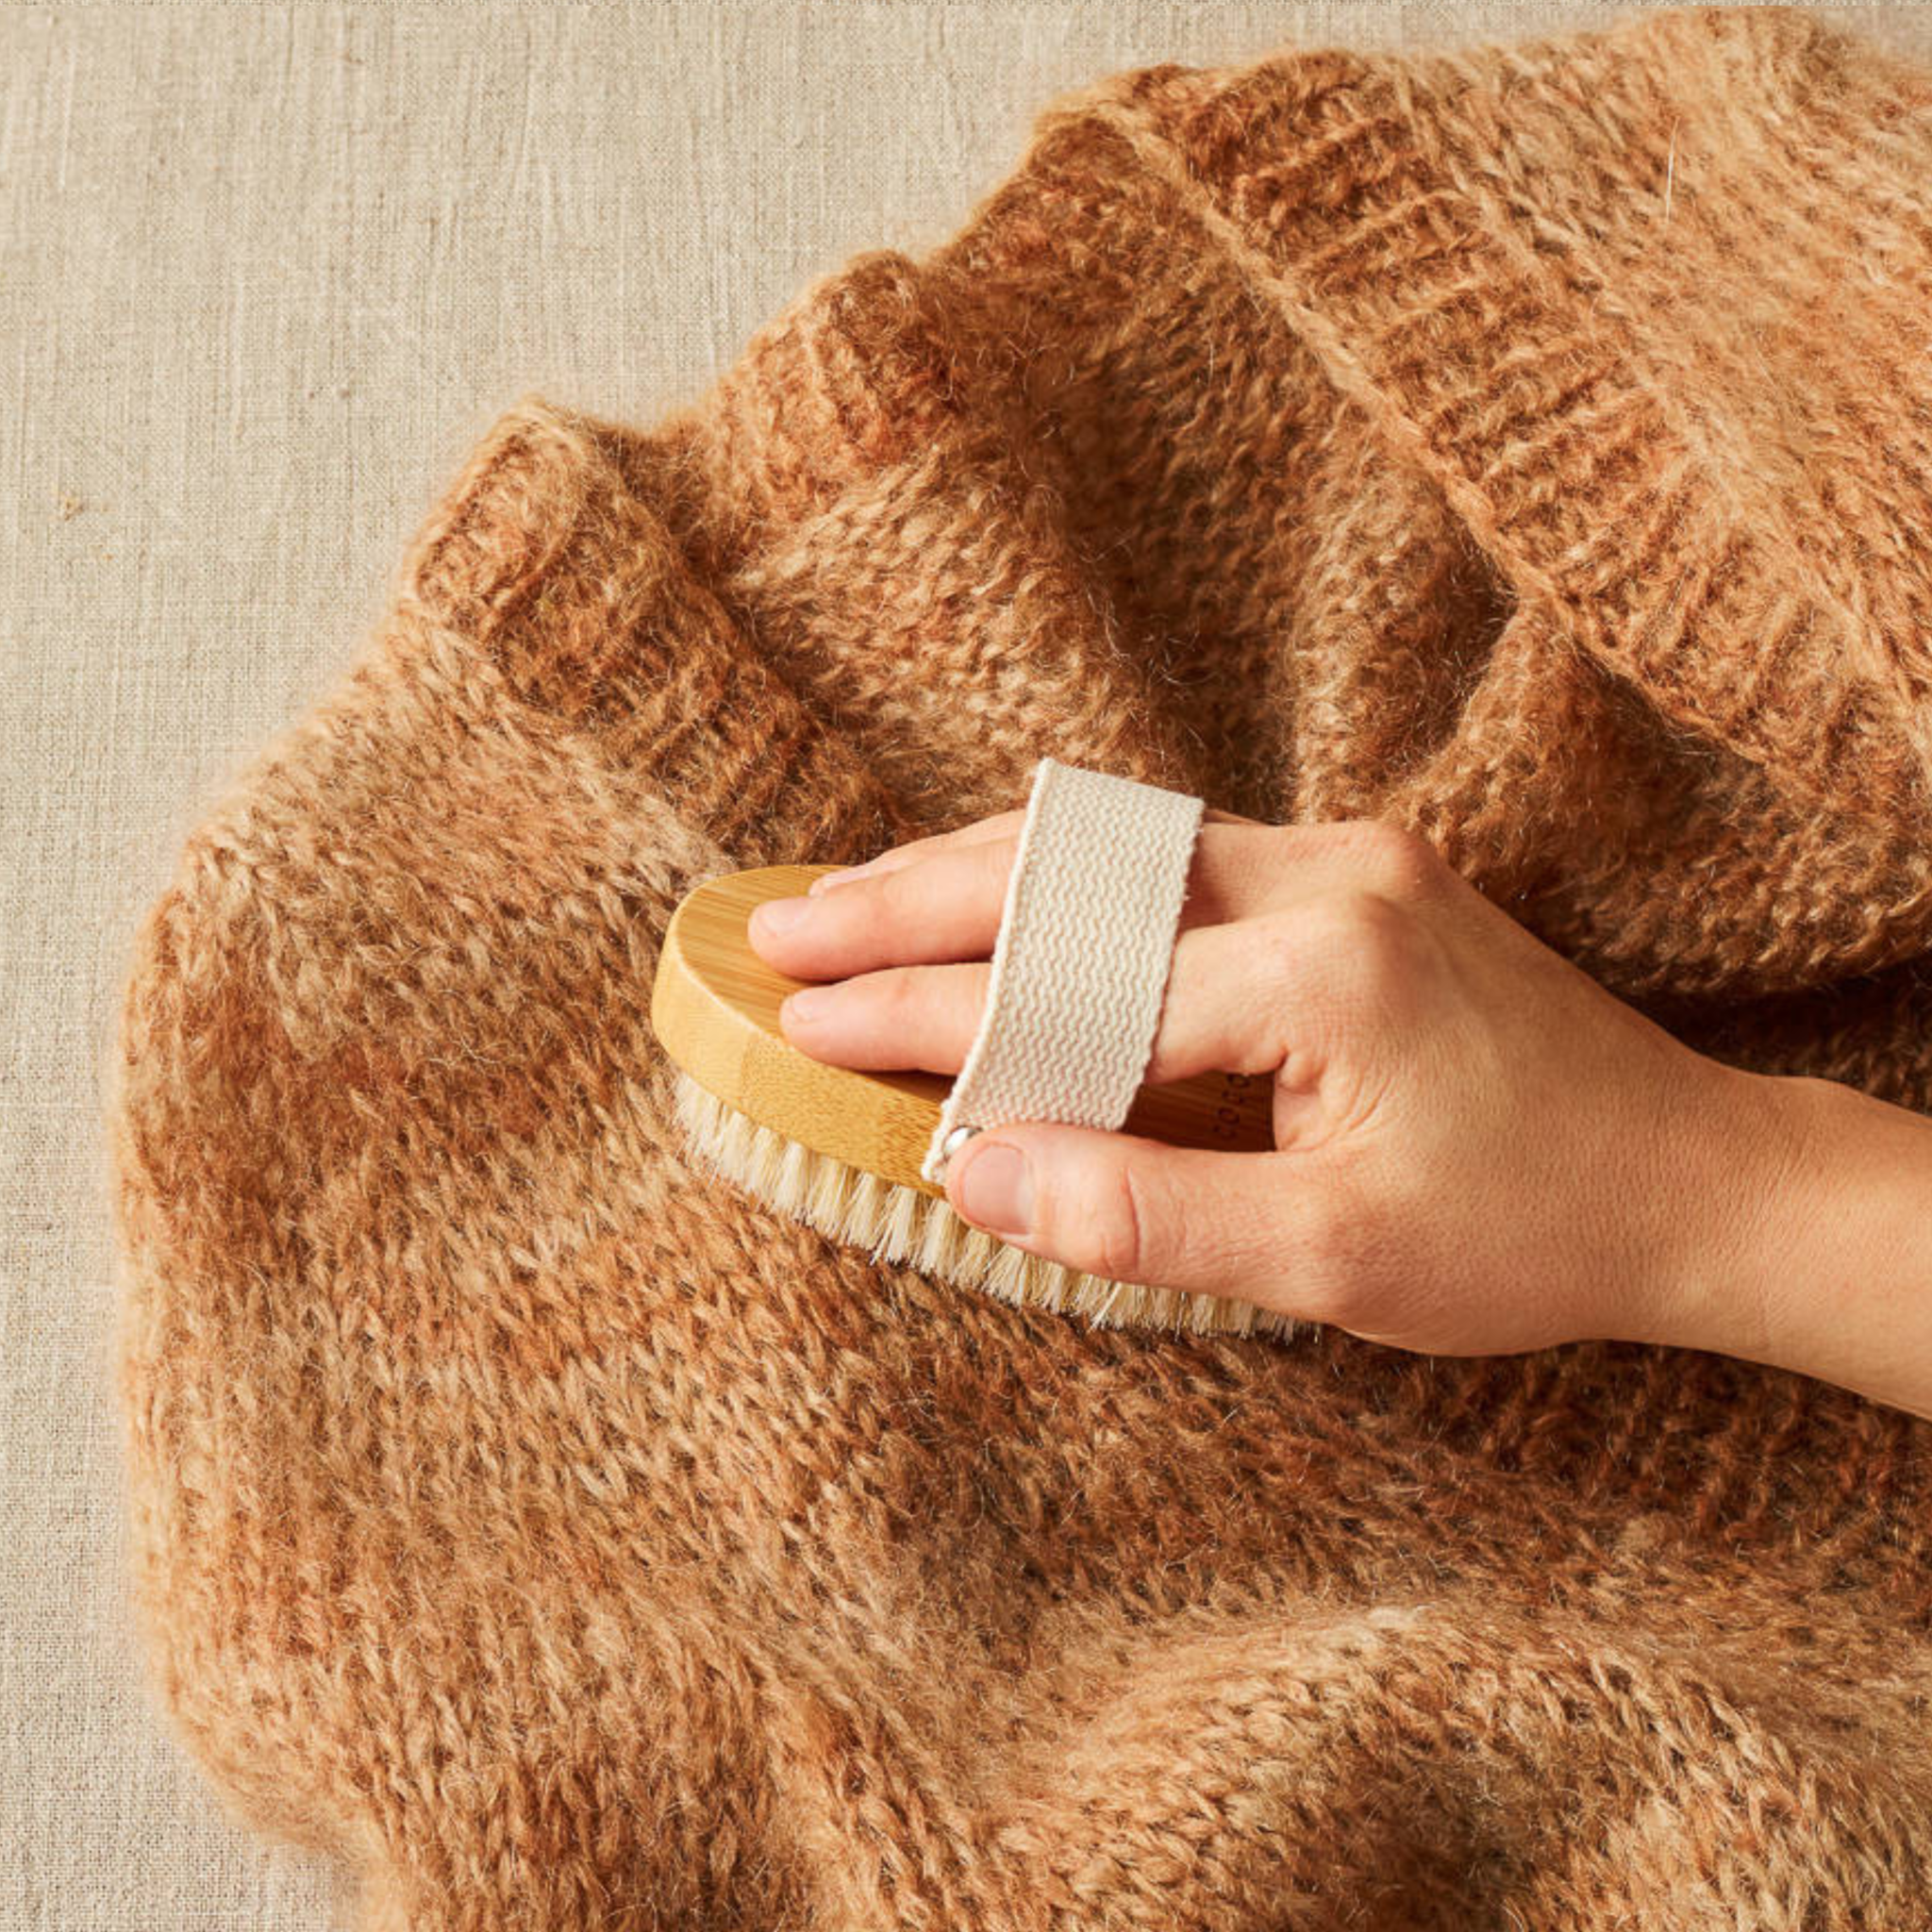 cocoknits sepetys mezgejai siuludama - Siulų dama - siūlai mezgėjoms megzti kojines megztinius šalikus šalikas megztinis siūlų parduotuvė pigiausi siūlai geriausi pasiūlymai nemokama registracija - Siūlų Dama Siūlų pasaulis https://siuludama.lt